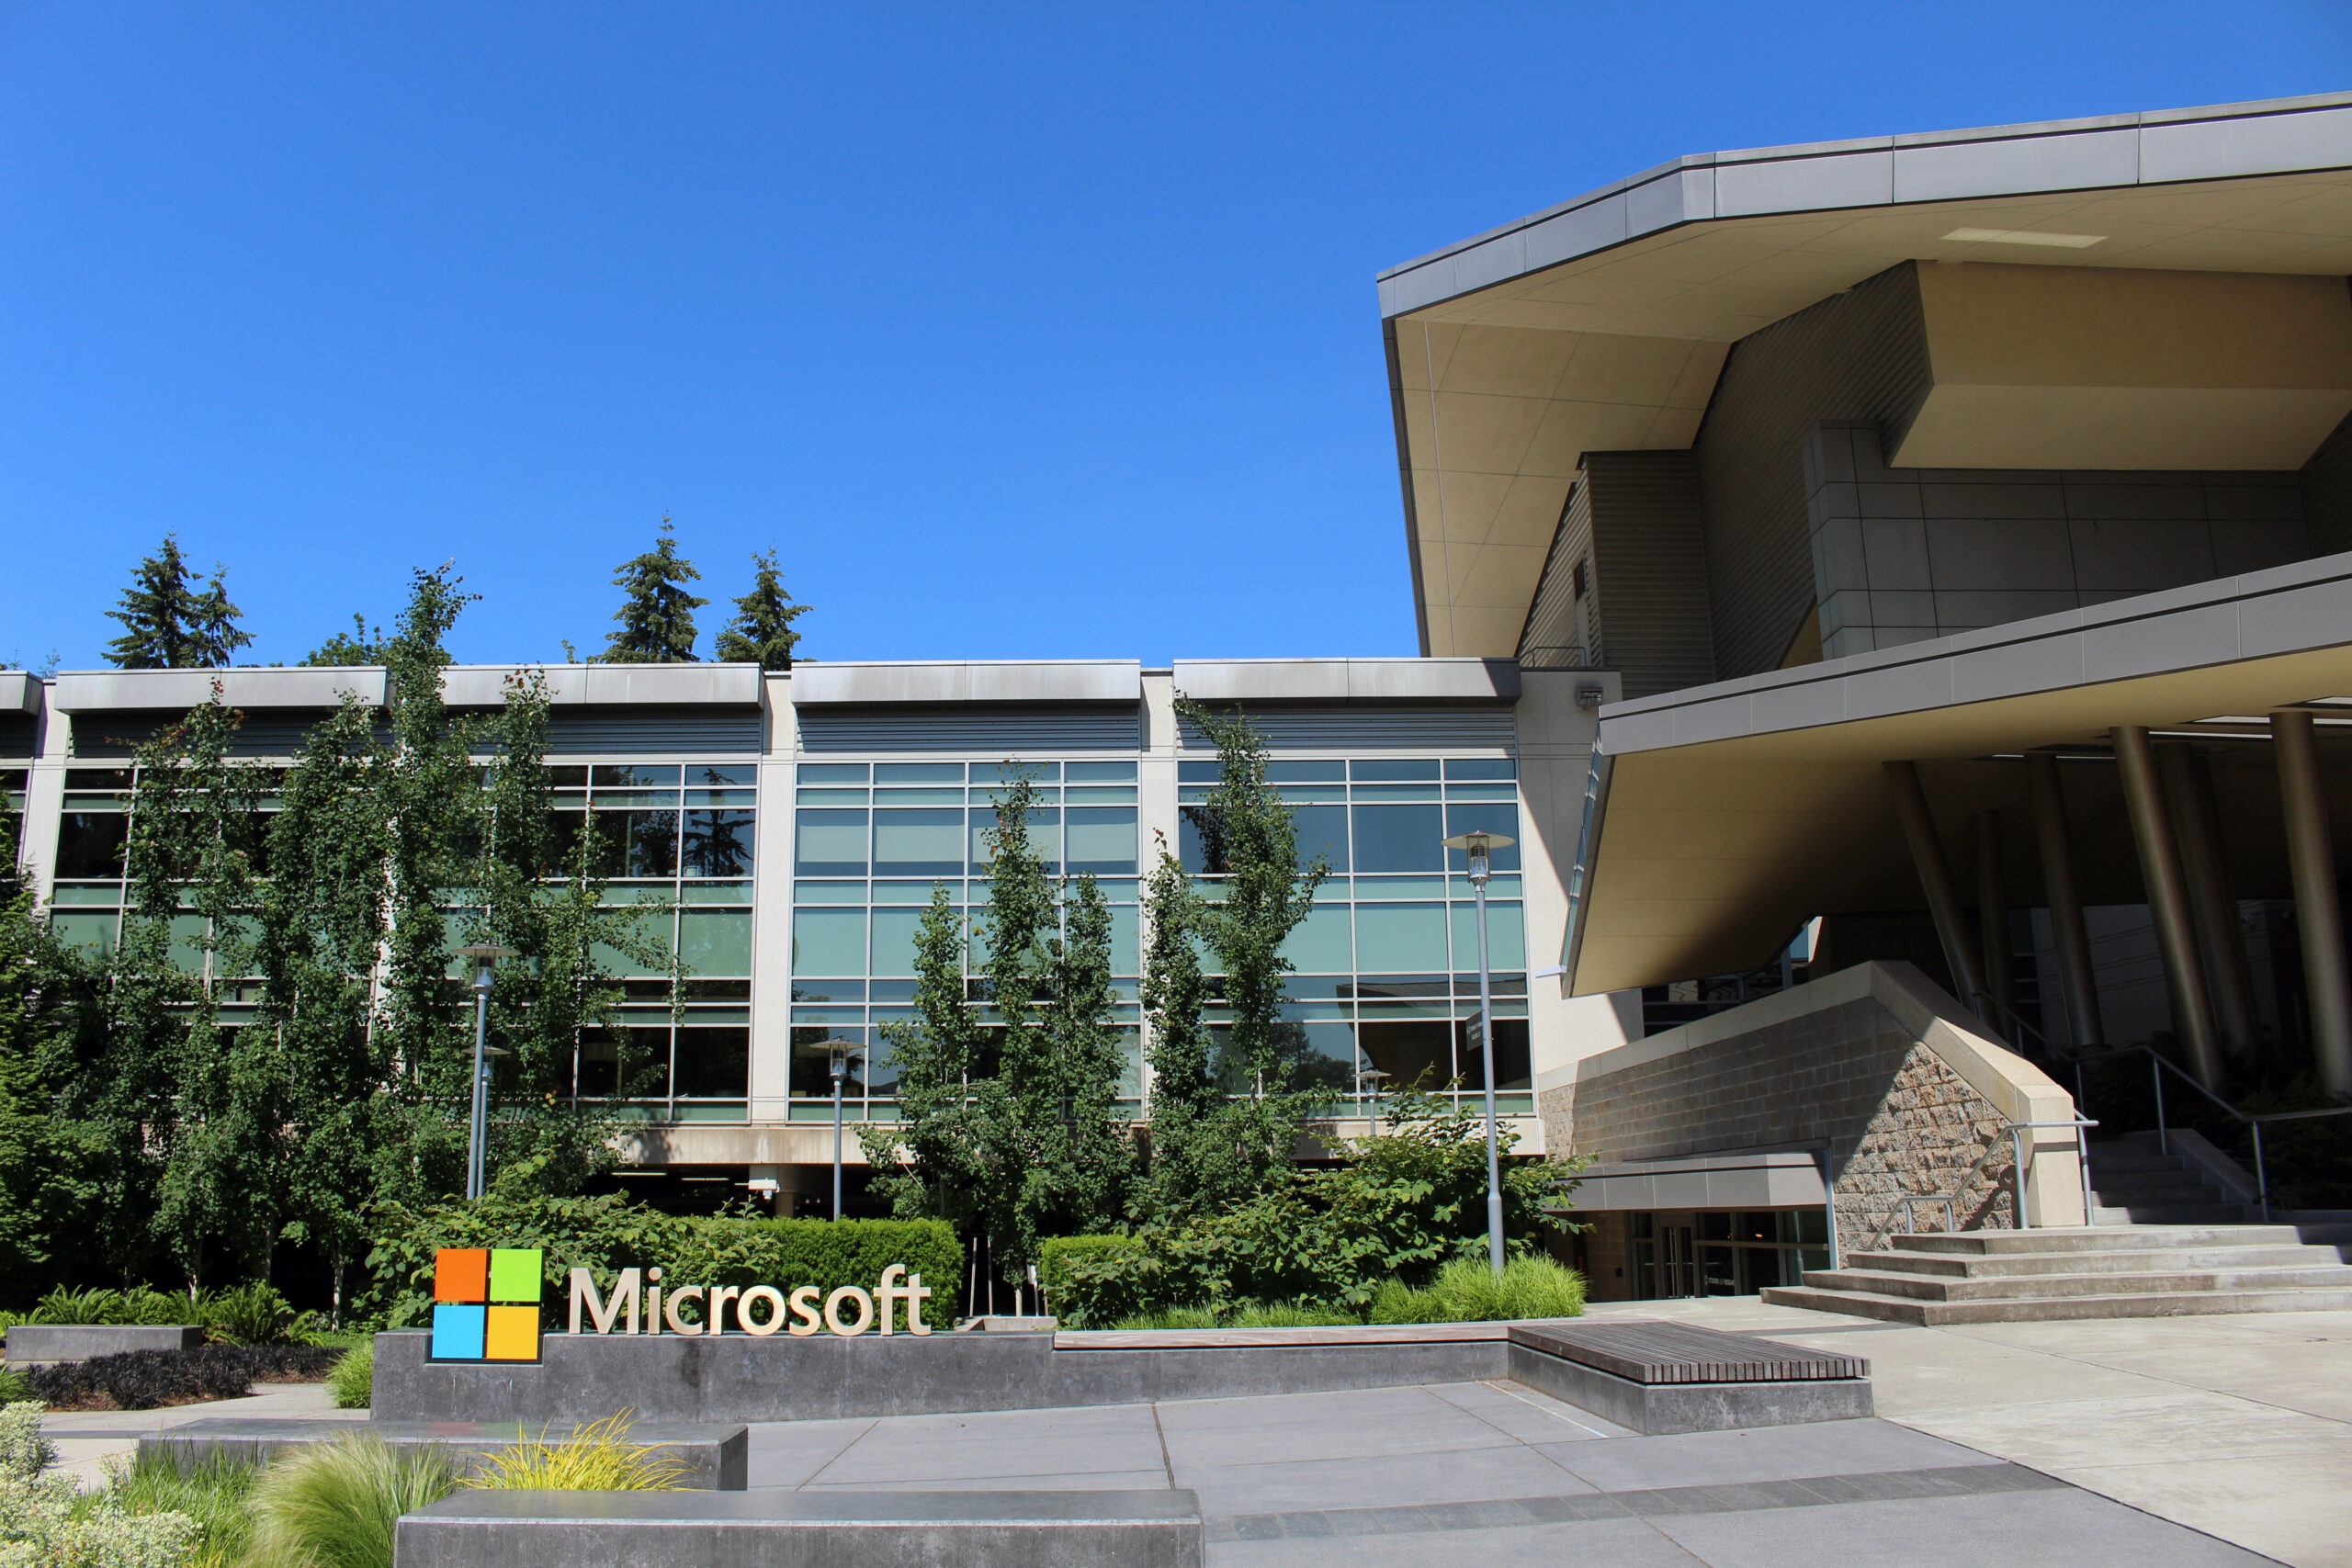 Microsoft y Alphabet ponen el foco en la nube y la inteligencia artificial